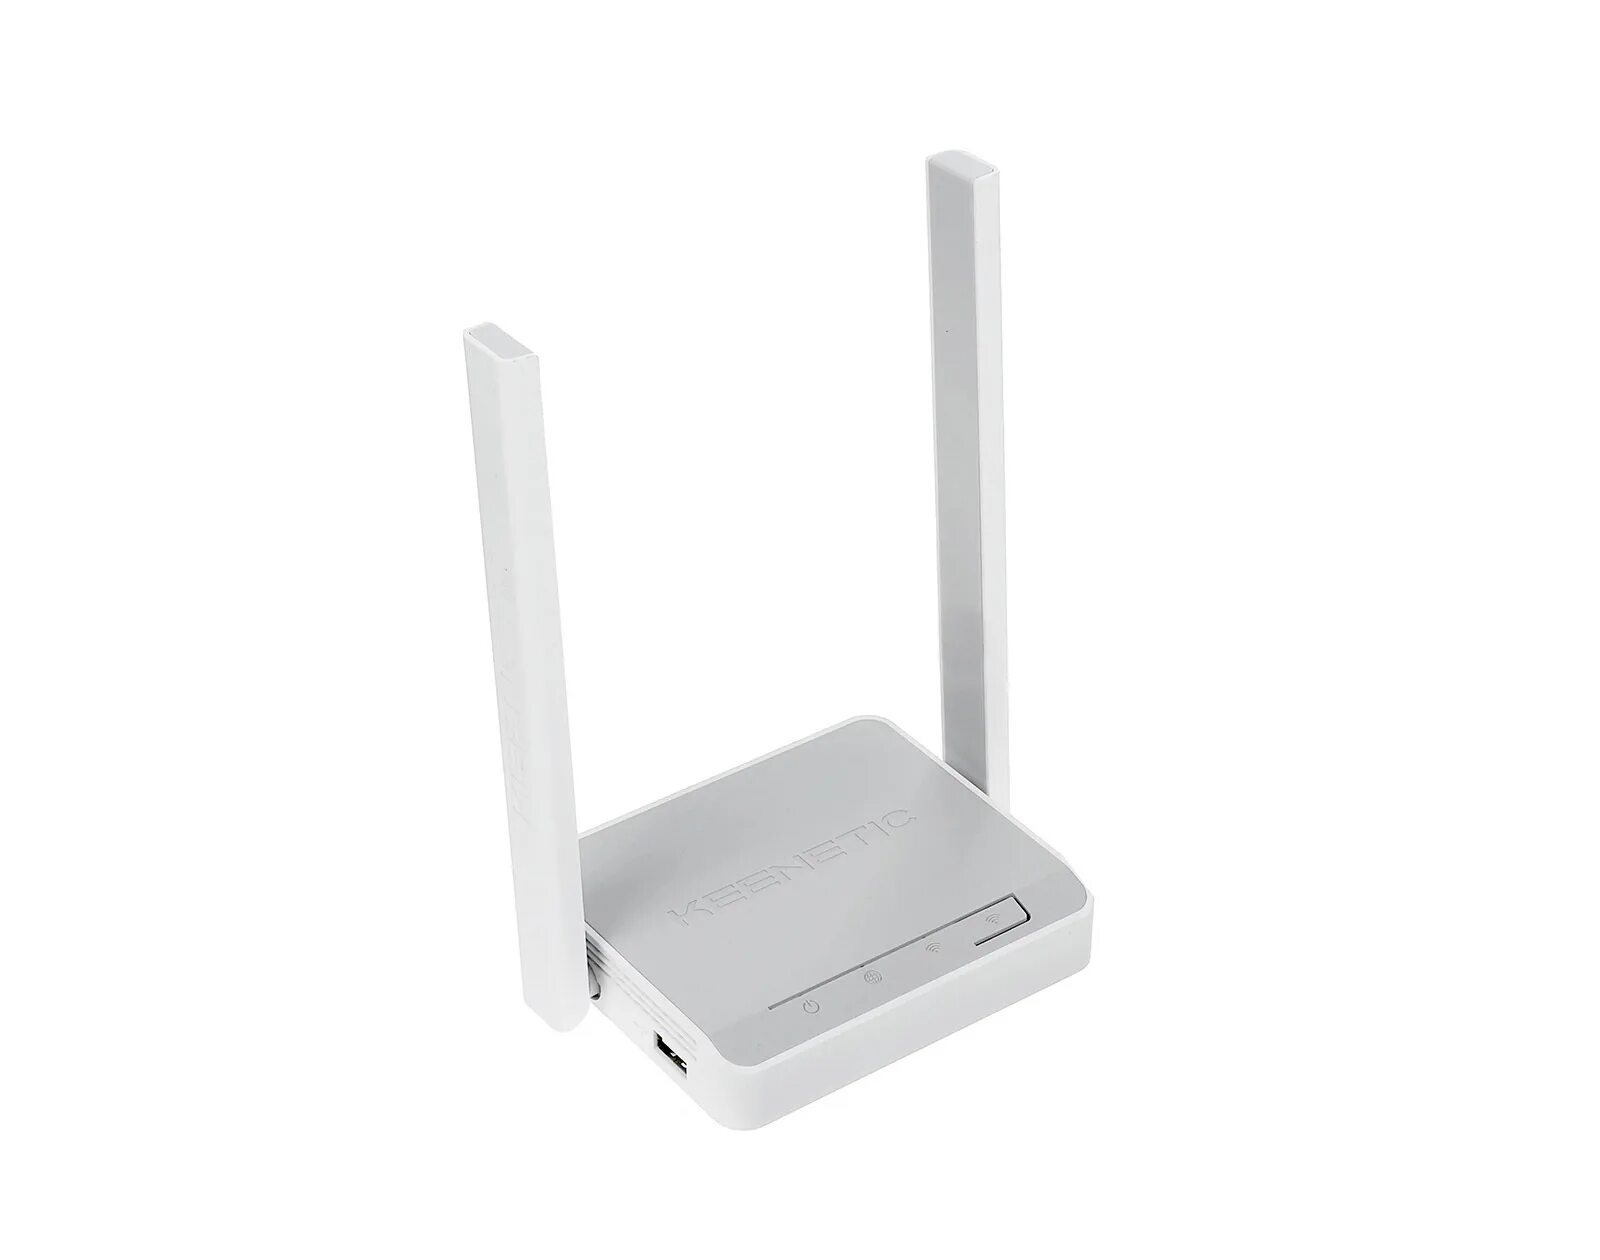 Wi-Fi роутер Keenetic 4g (KN-1211). Роутер Keenetic 4g KN-1210. Wi-Fi роутер Keenetic 4g n300. Wi-Fi роутер ZYXEL Keenetic 4g.